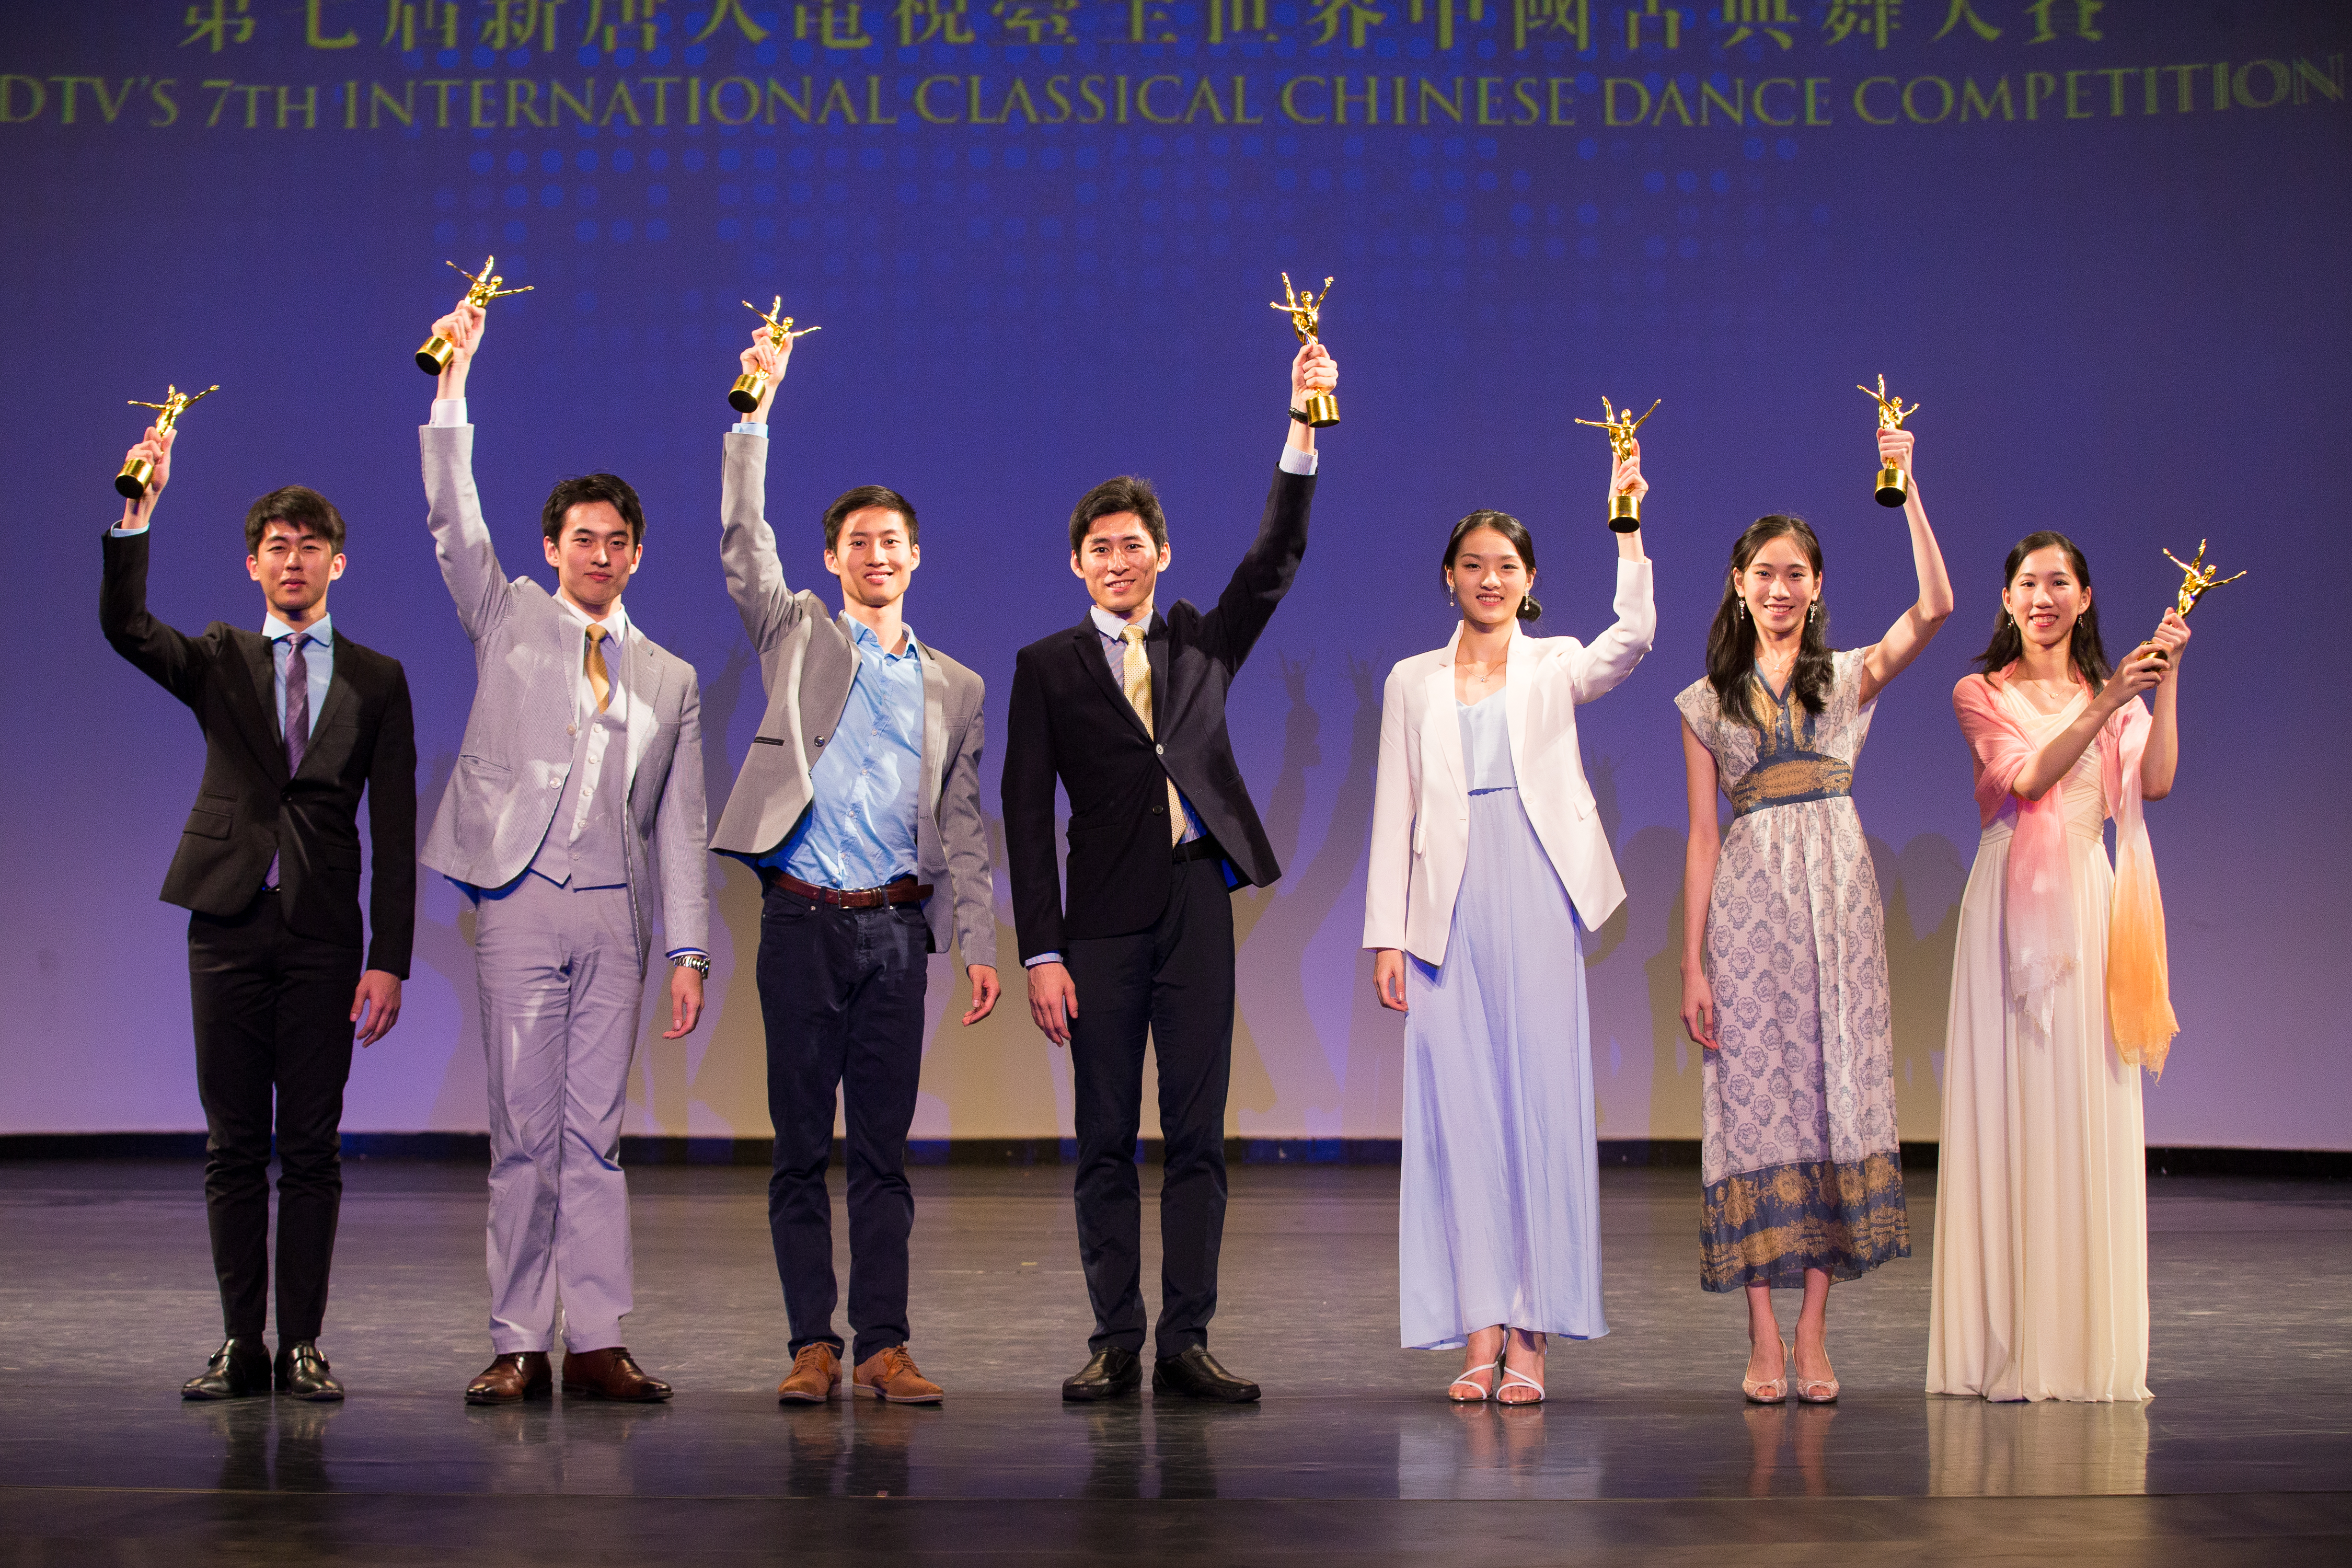 荣获中国古典舞大赛冠军 小林健司喜出望外